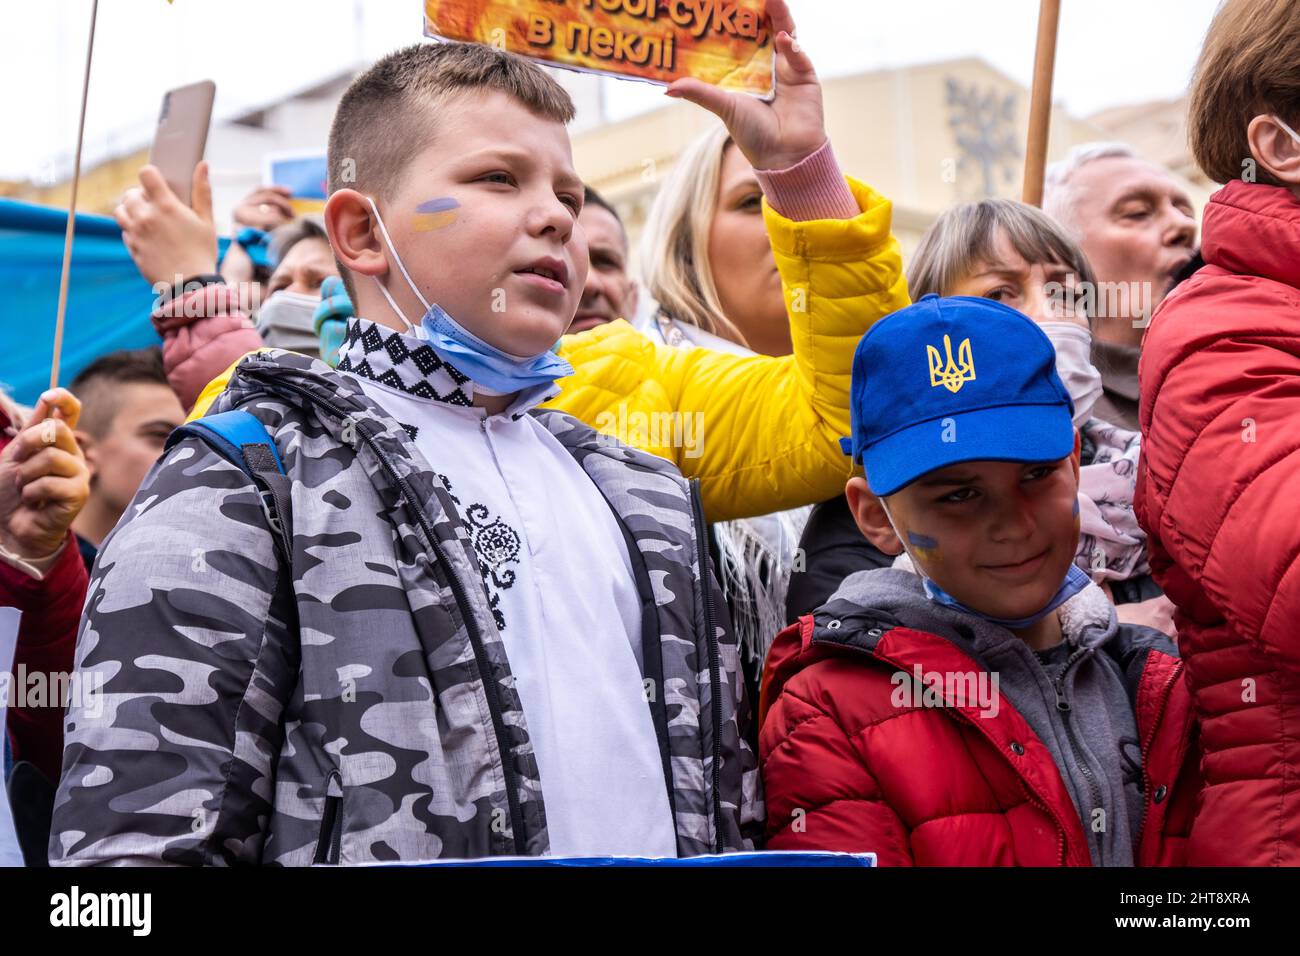 Valencia, Spagna; 27th Feb 2022: I manifestanti protestano contro la guerra durante una manifestazione contro l'invasione russa dell'Ucraina. Erano presenti anche alcuni bambini. Credit: Media+Media/Alamy Live News Foto Stock